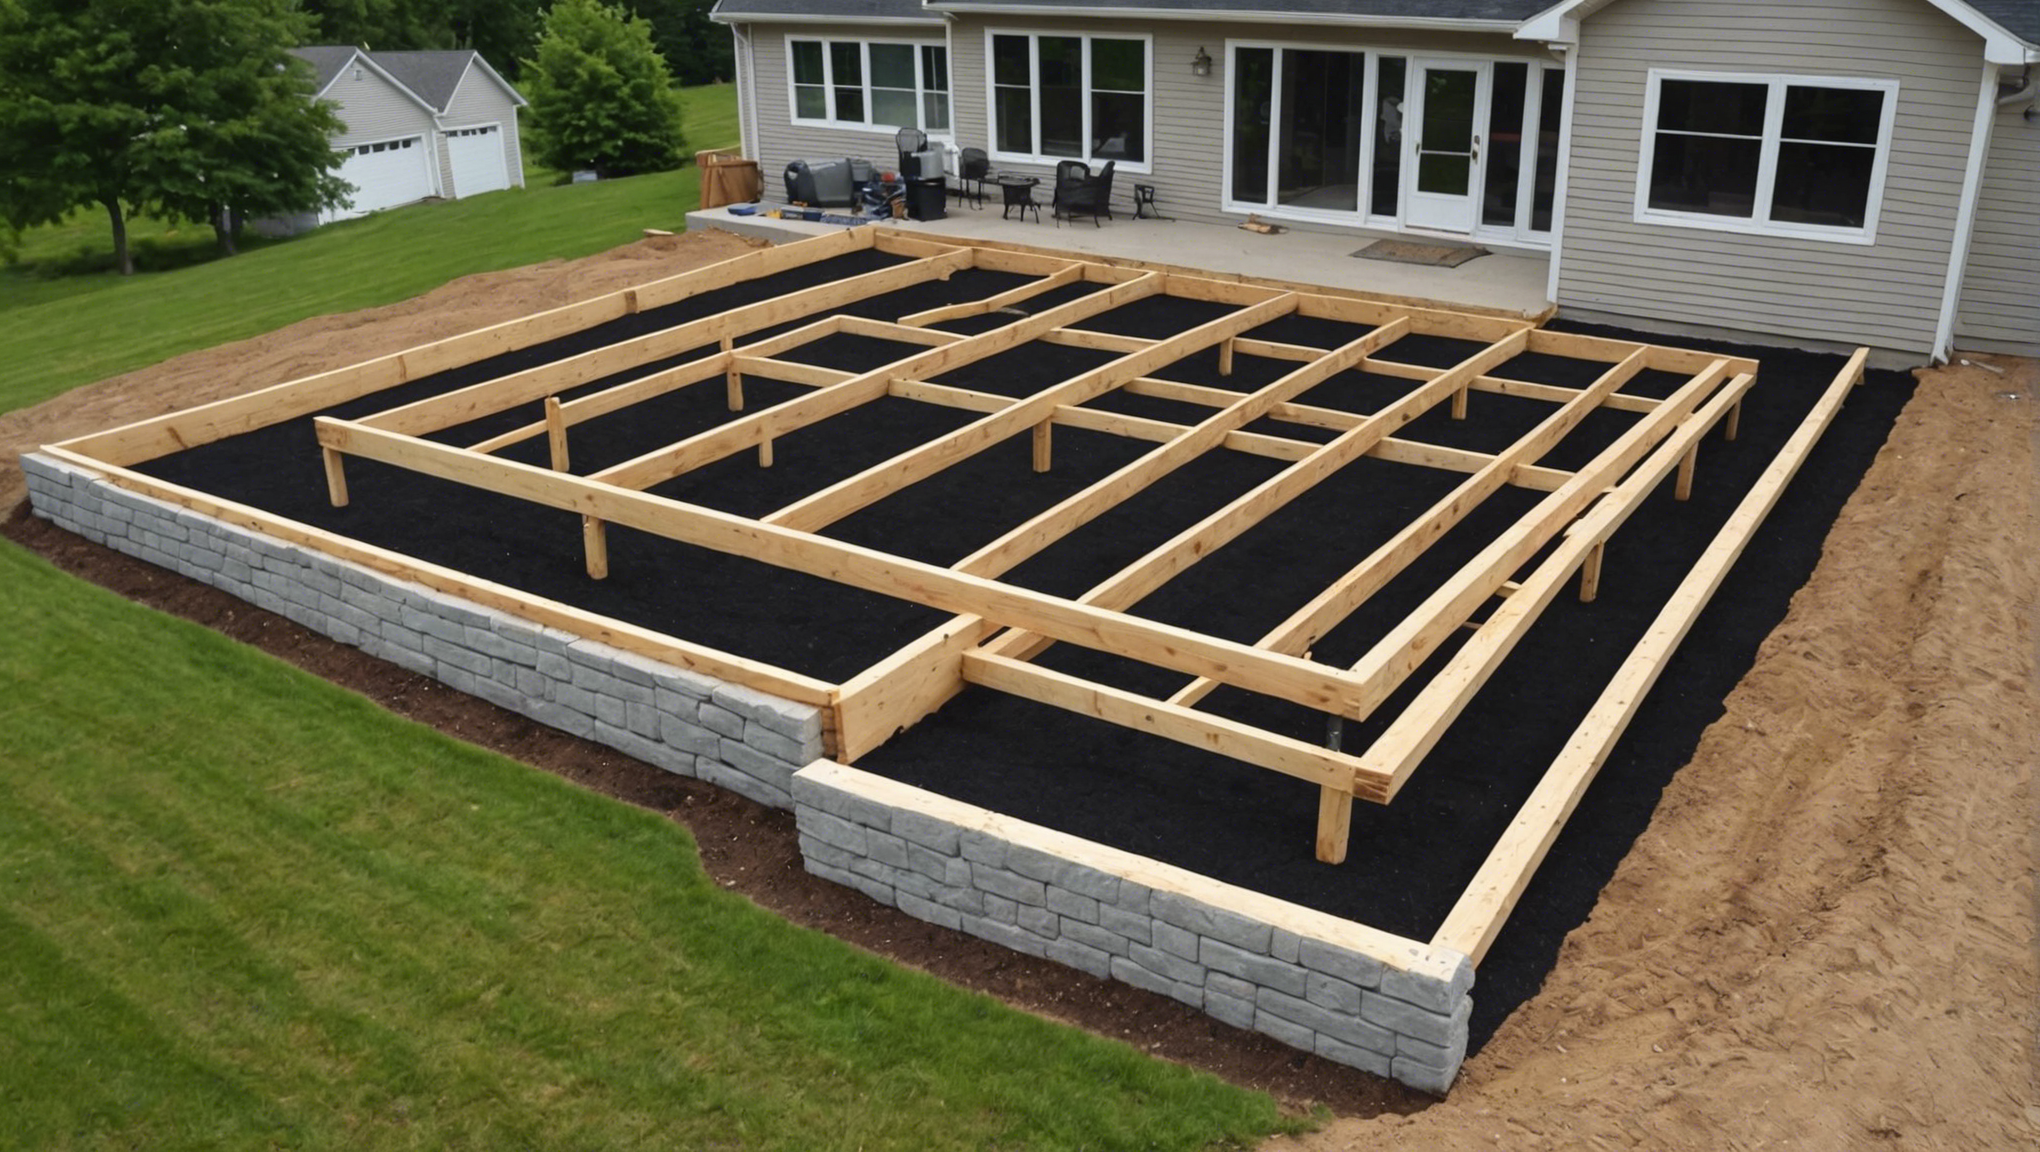 découvrez toutes les étapes pour construire une fondation solide pour votre maison : conseils, techniques et expertises pour assurer la durabilité et la stabilité de votre construction.